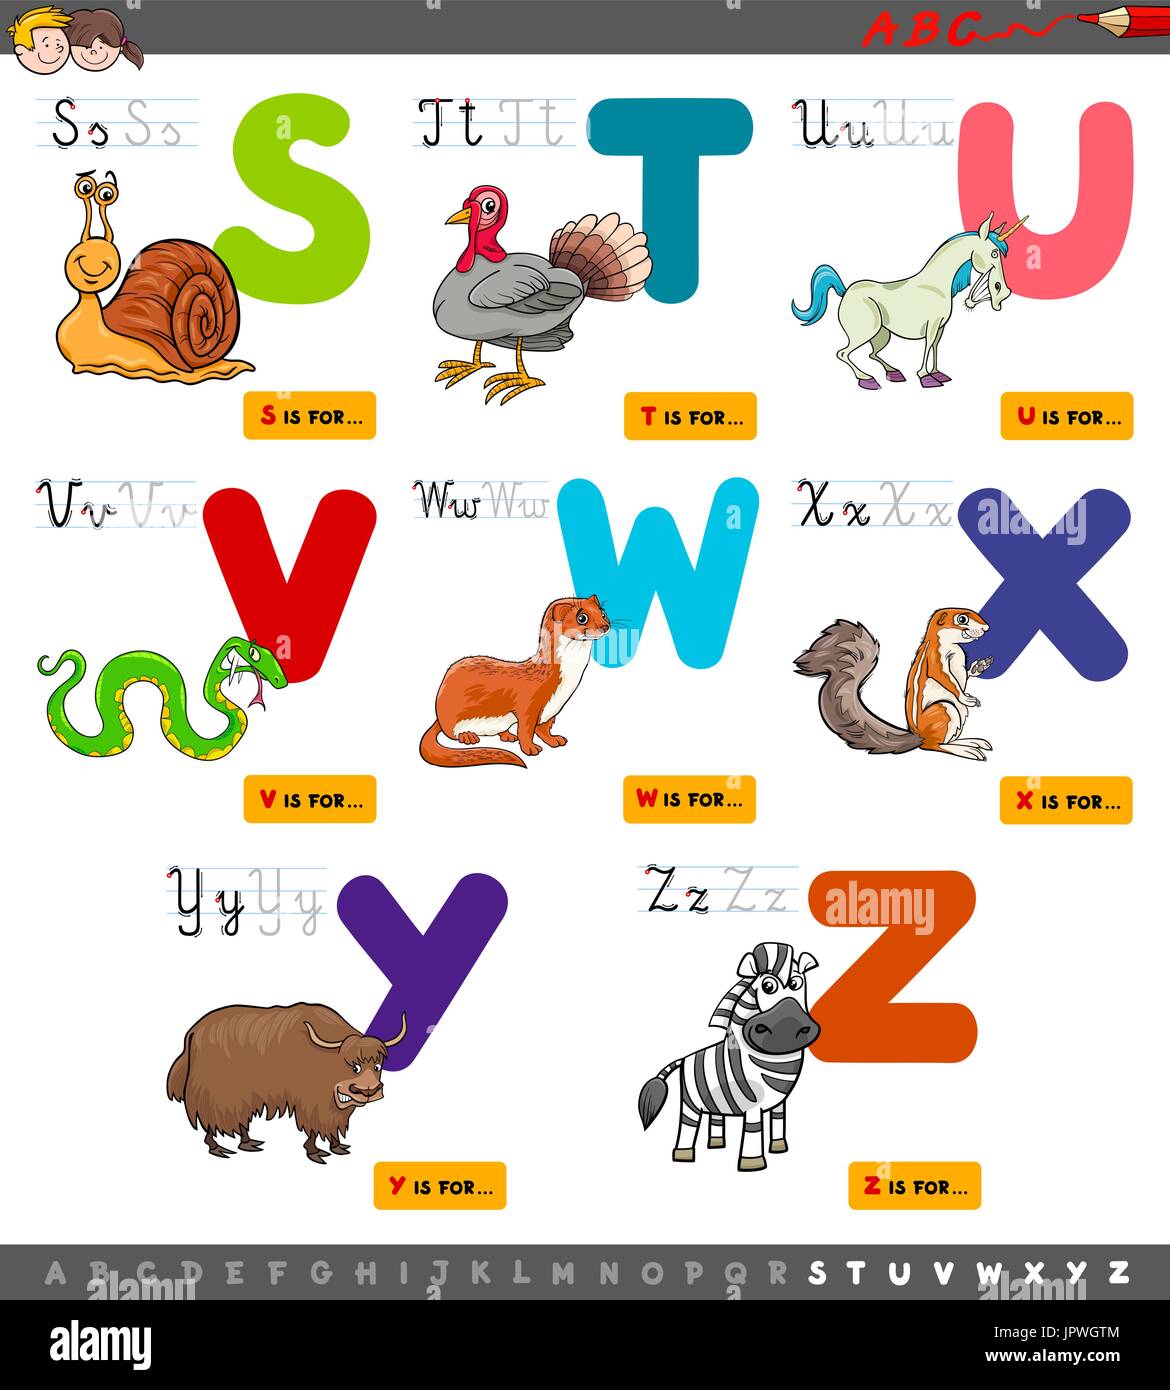 Cartoon Illustration de l'Alphabet Majuscules mis en vedette des animaux pour lire et écrire l'éducation pour les enfants de S à Z Illustration de Vecteur